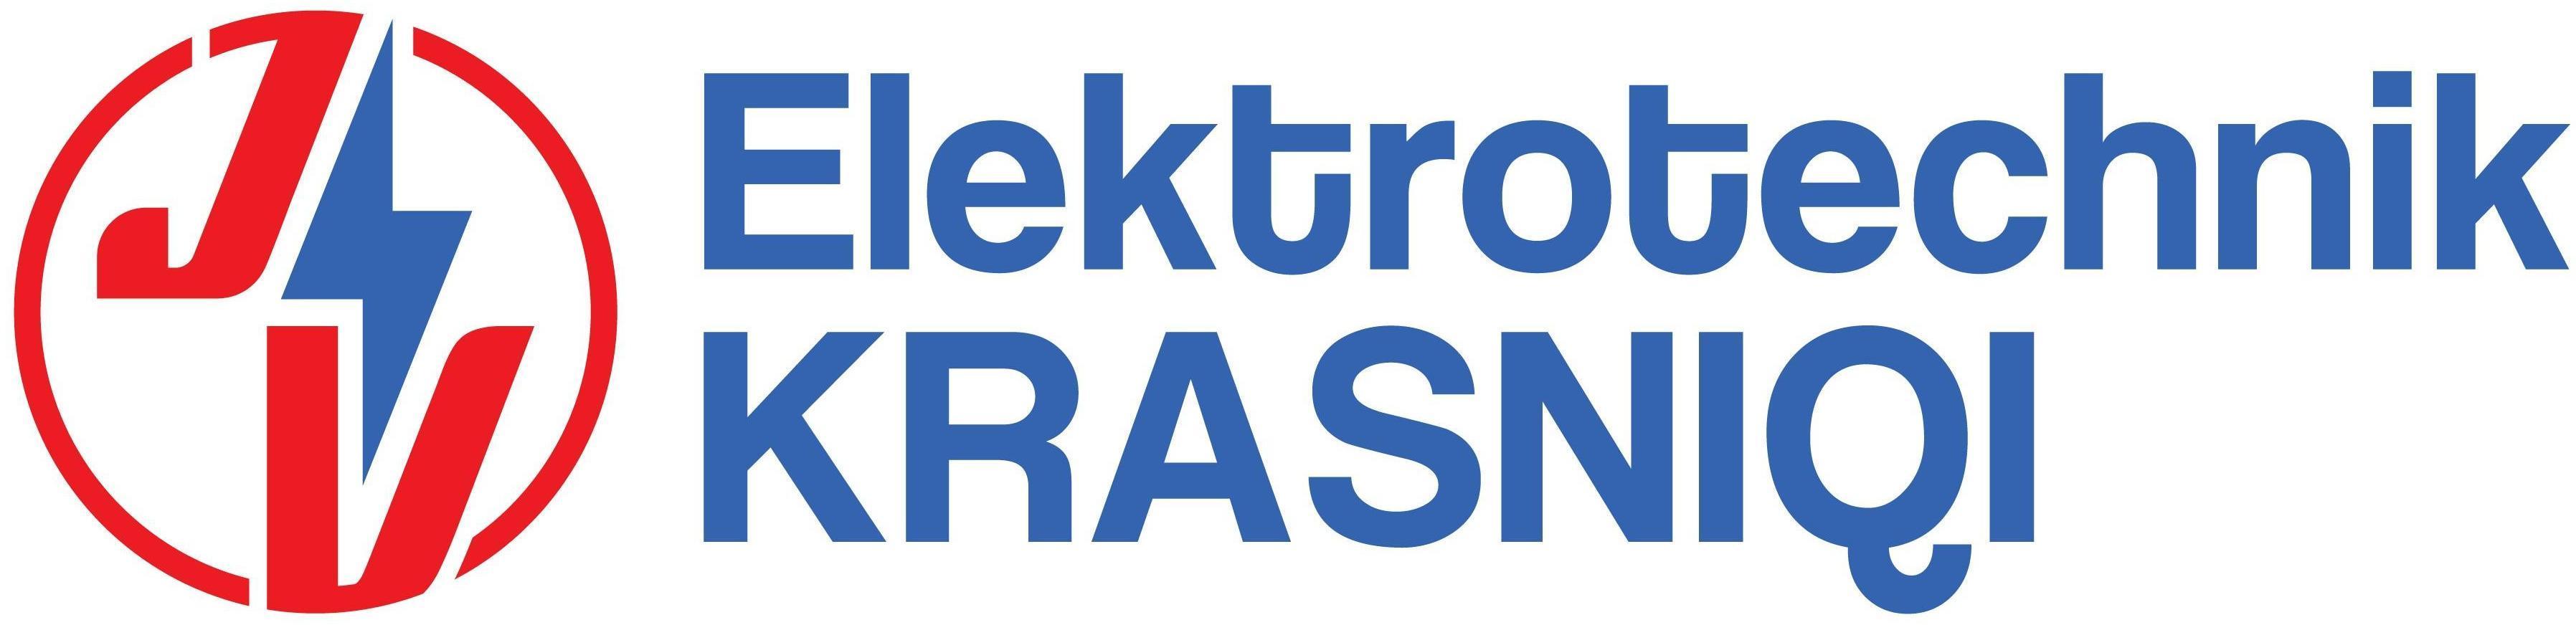 Logo Elektrotechnik Krasniqi OG